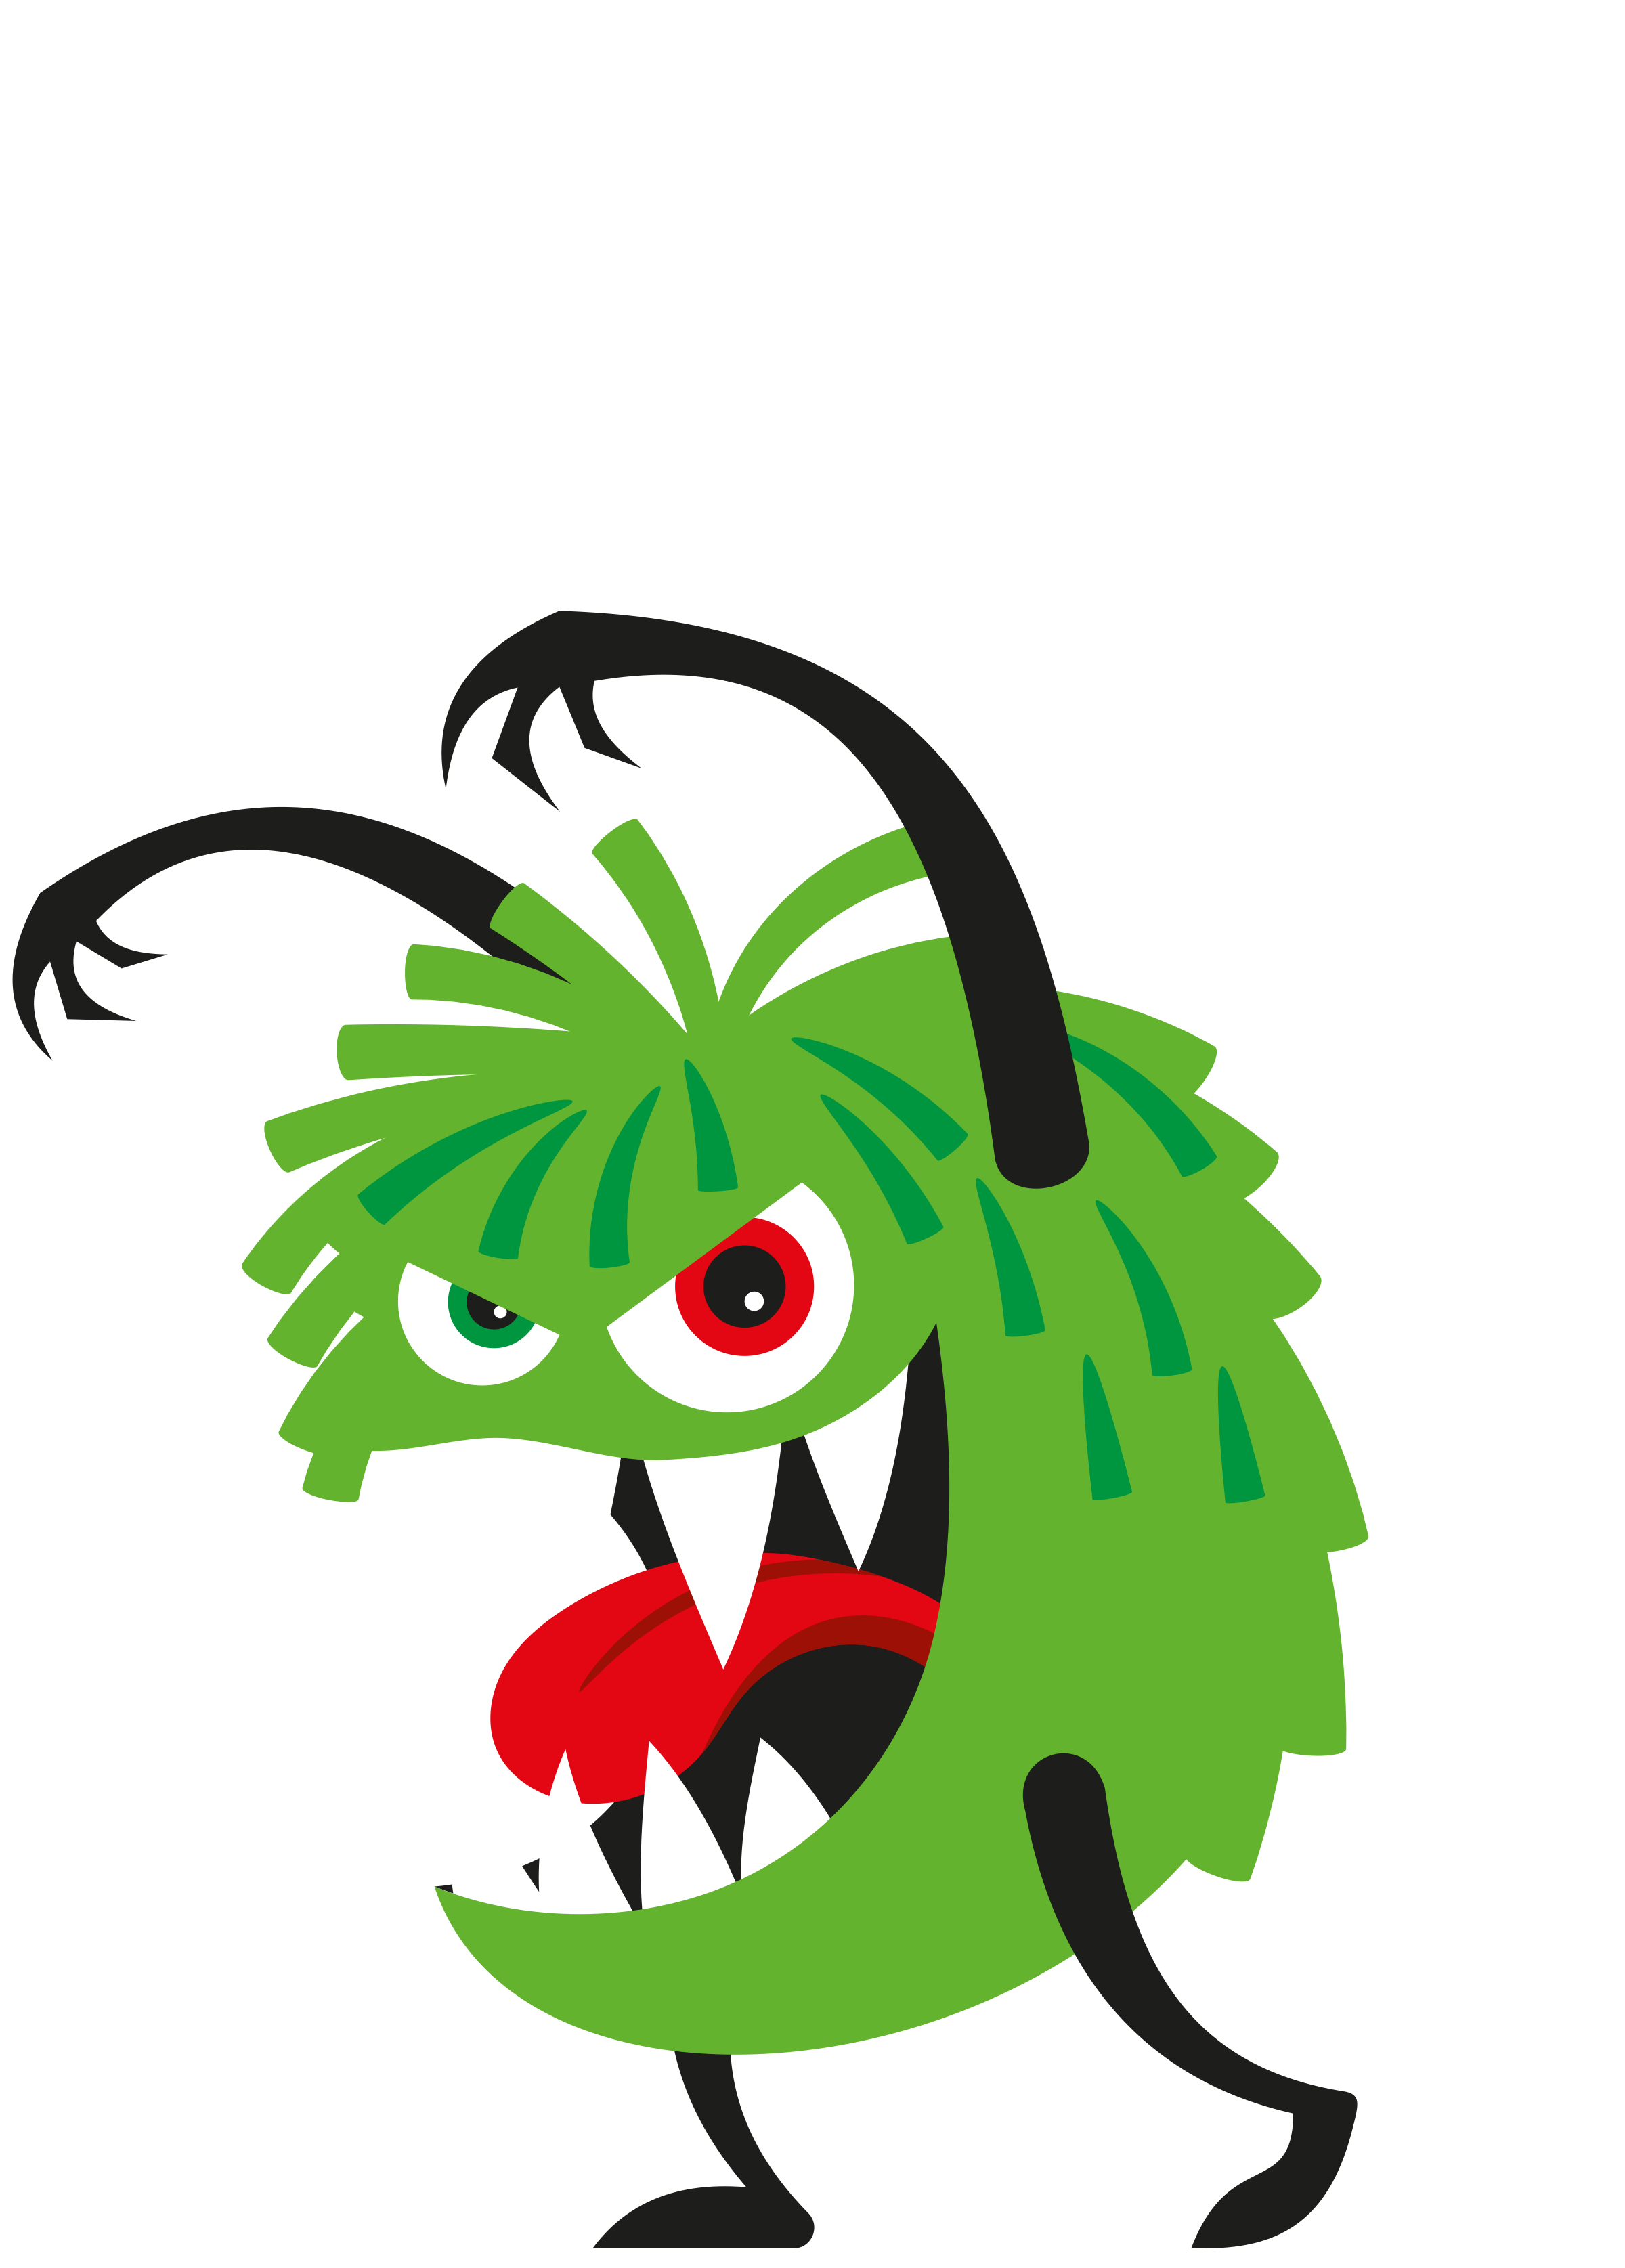 Grünes Monster groß